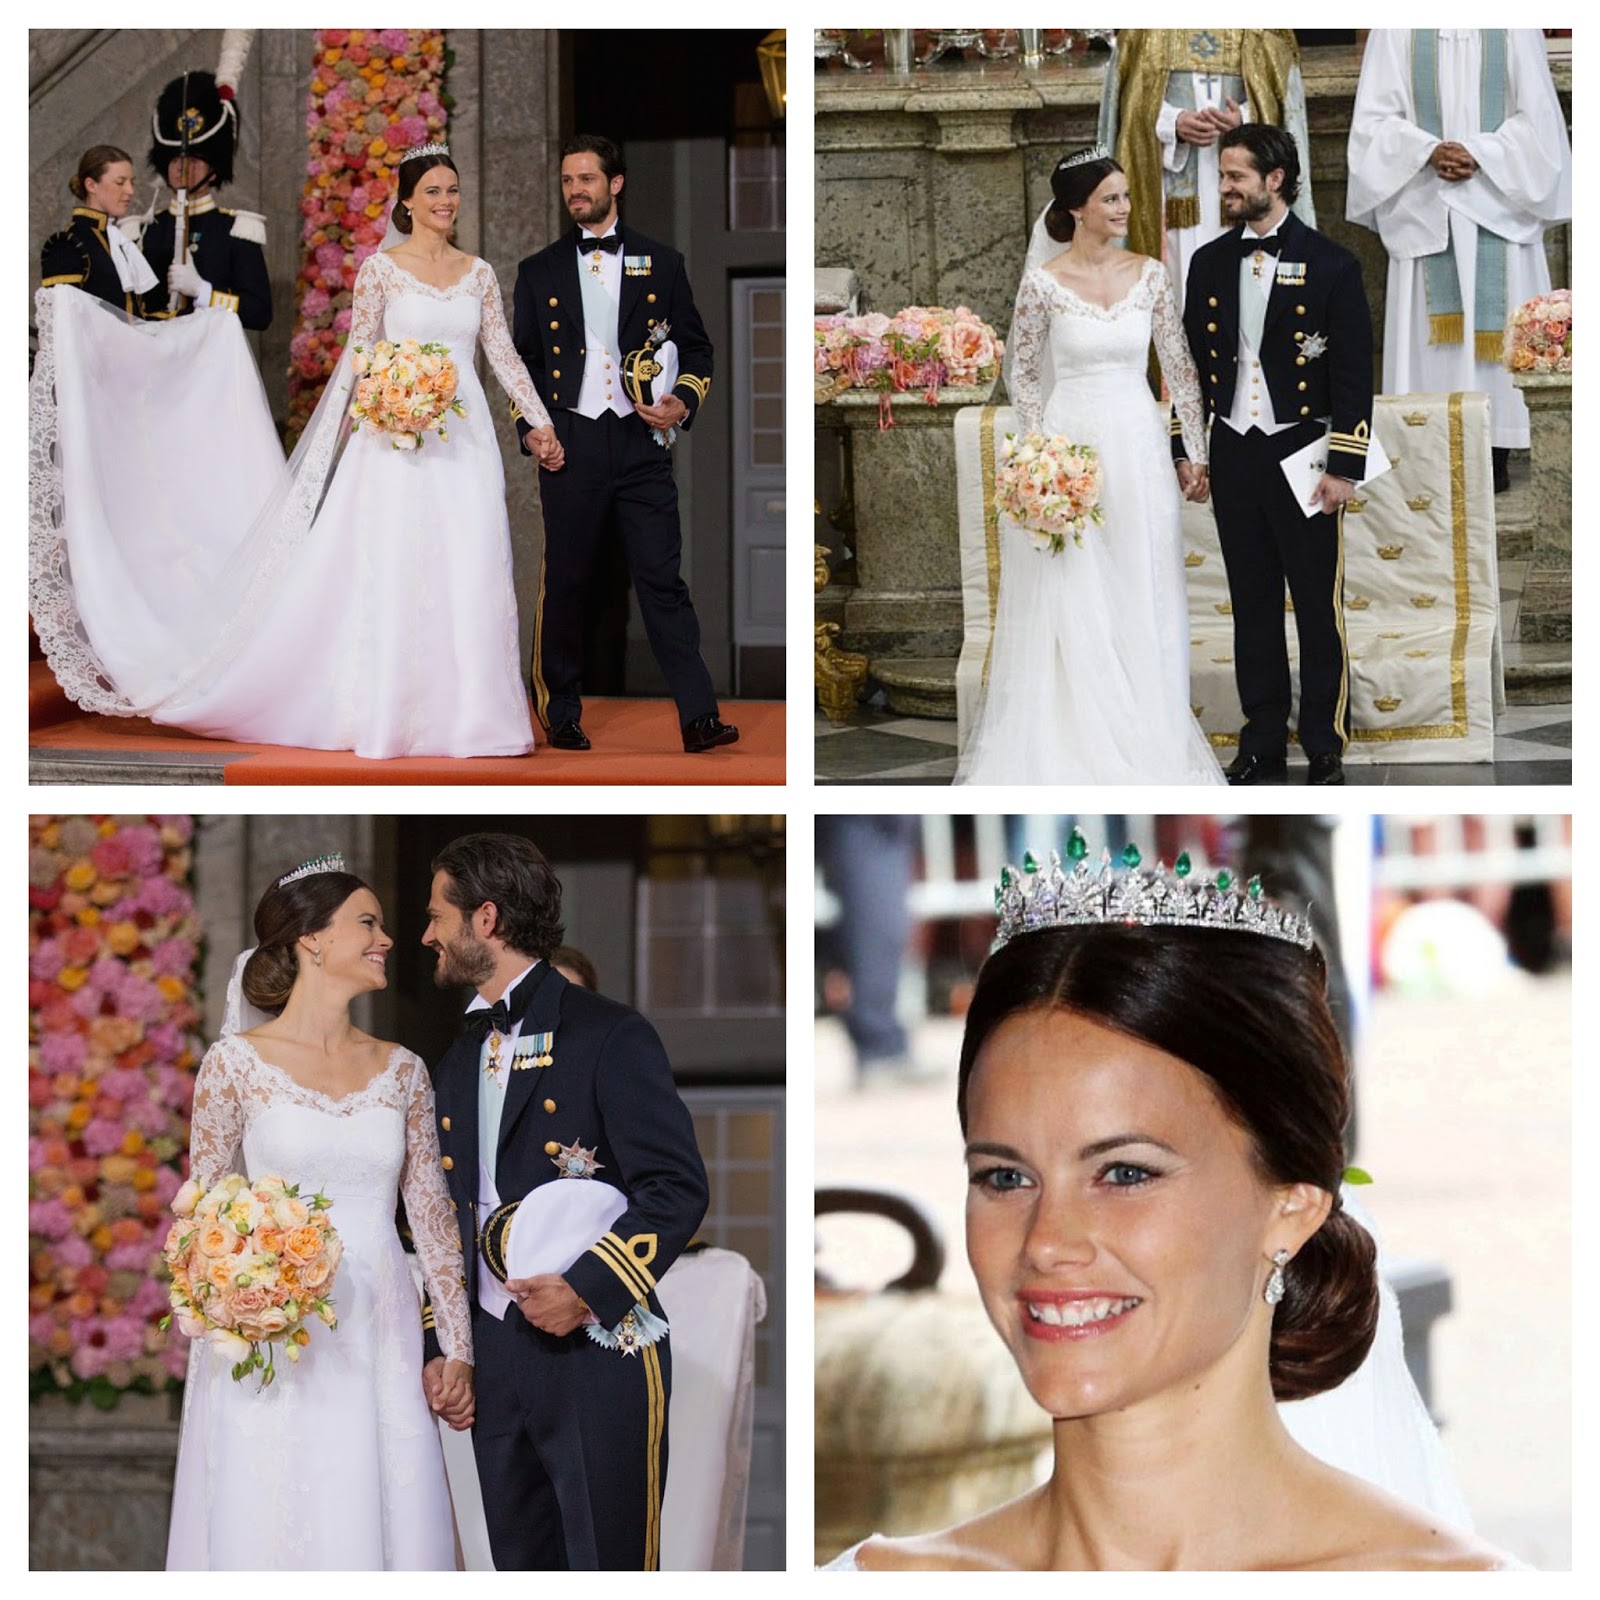 http://2.bp.blogspot.com/-6Uu5F5bFjj0/VXz_KA1fRlI/AAAAAAABRes/IcINGo6ySps/s1600/Sweden_Royal_Wedding.jpg